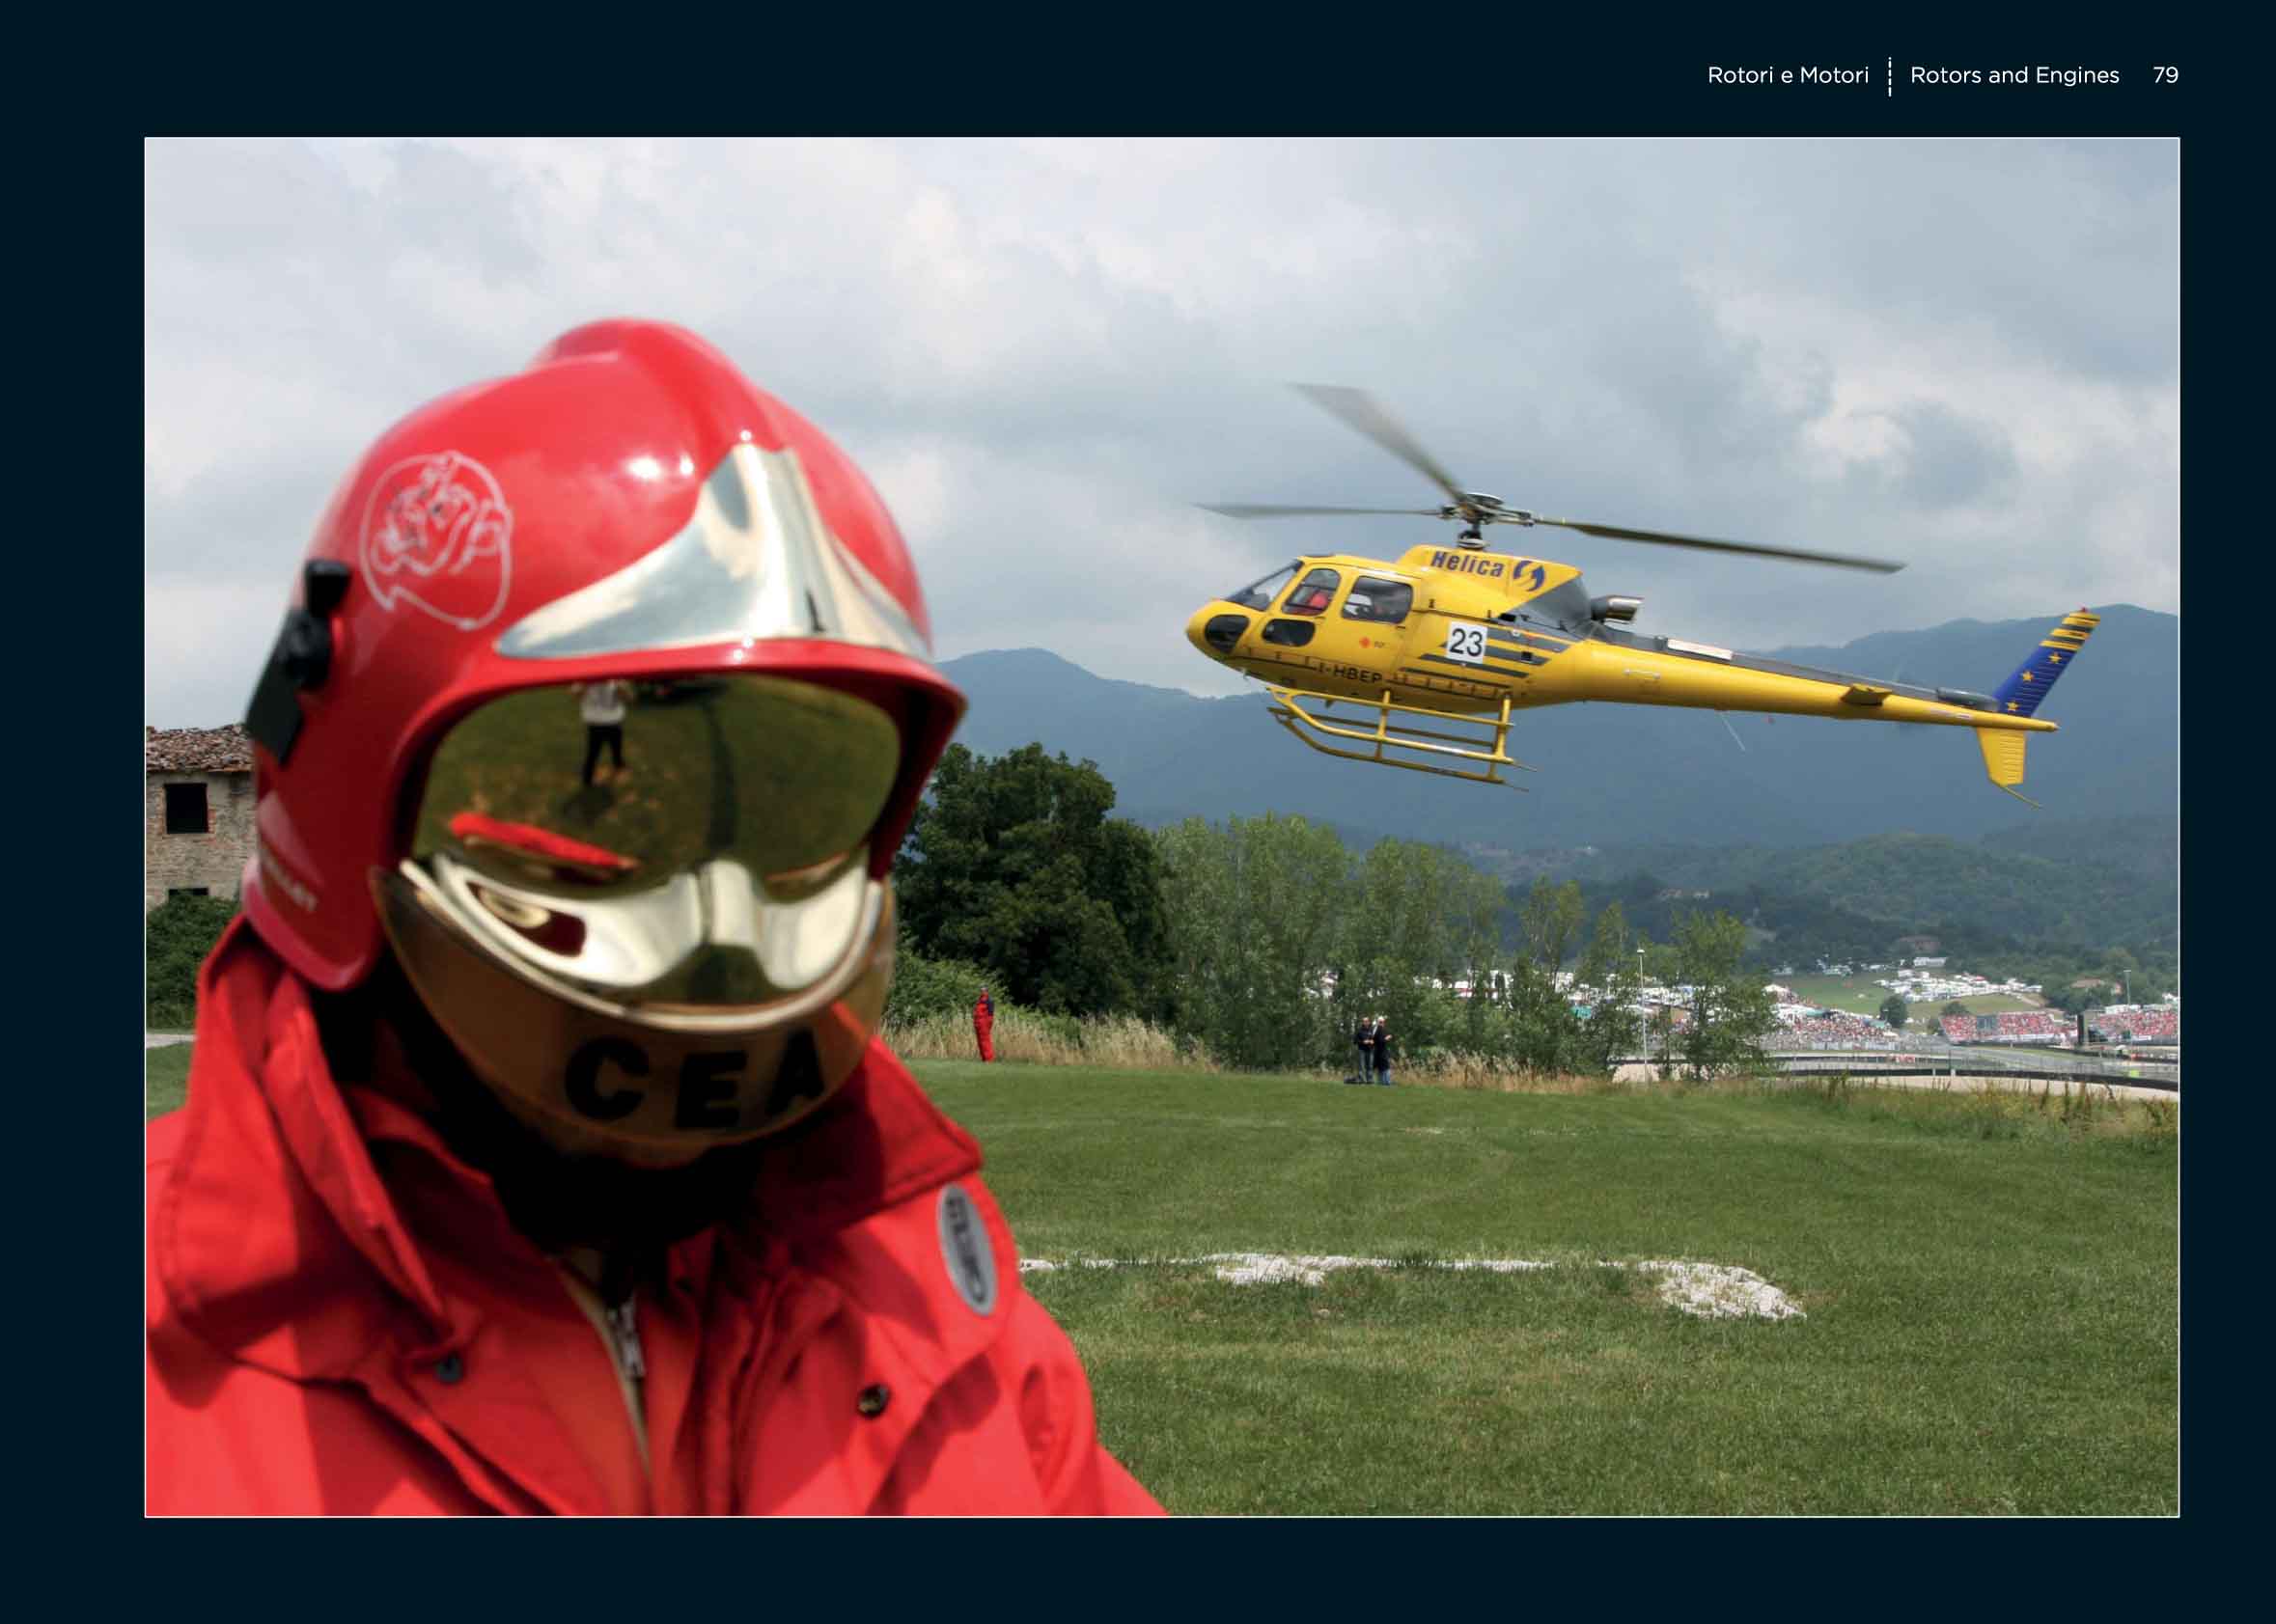 Soccorso ed elicotteri, intervista al fotoreporter Dino Marcellino | Emergency Live 7